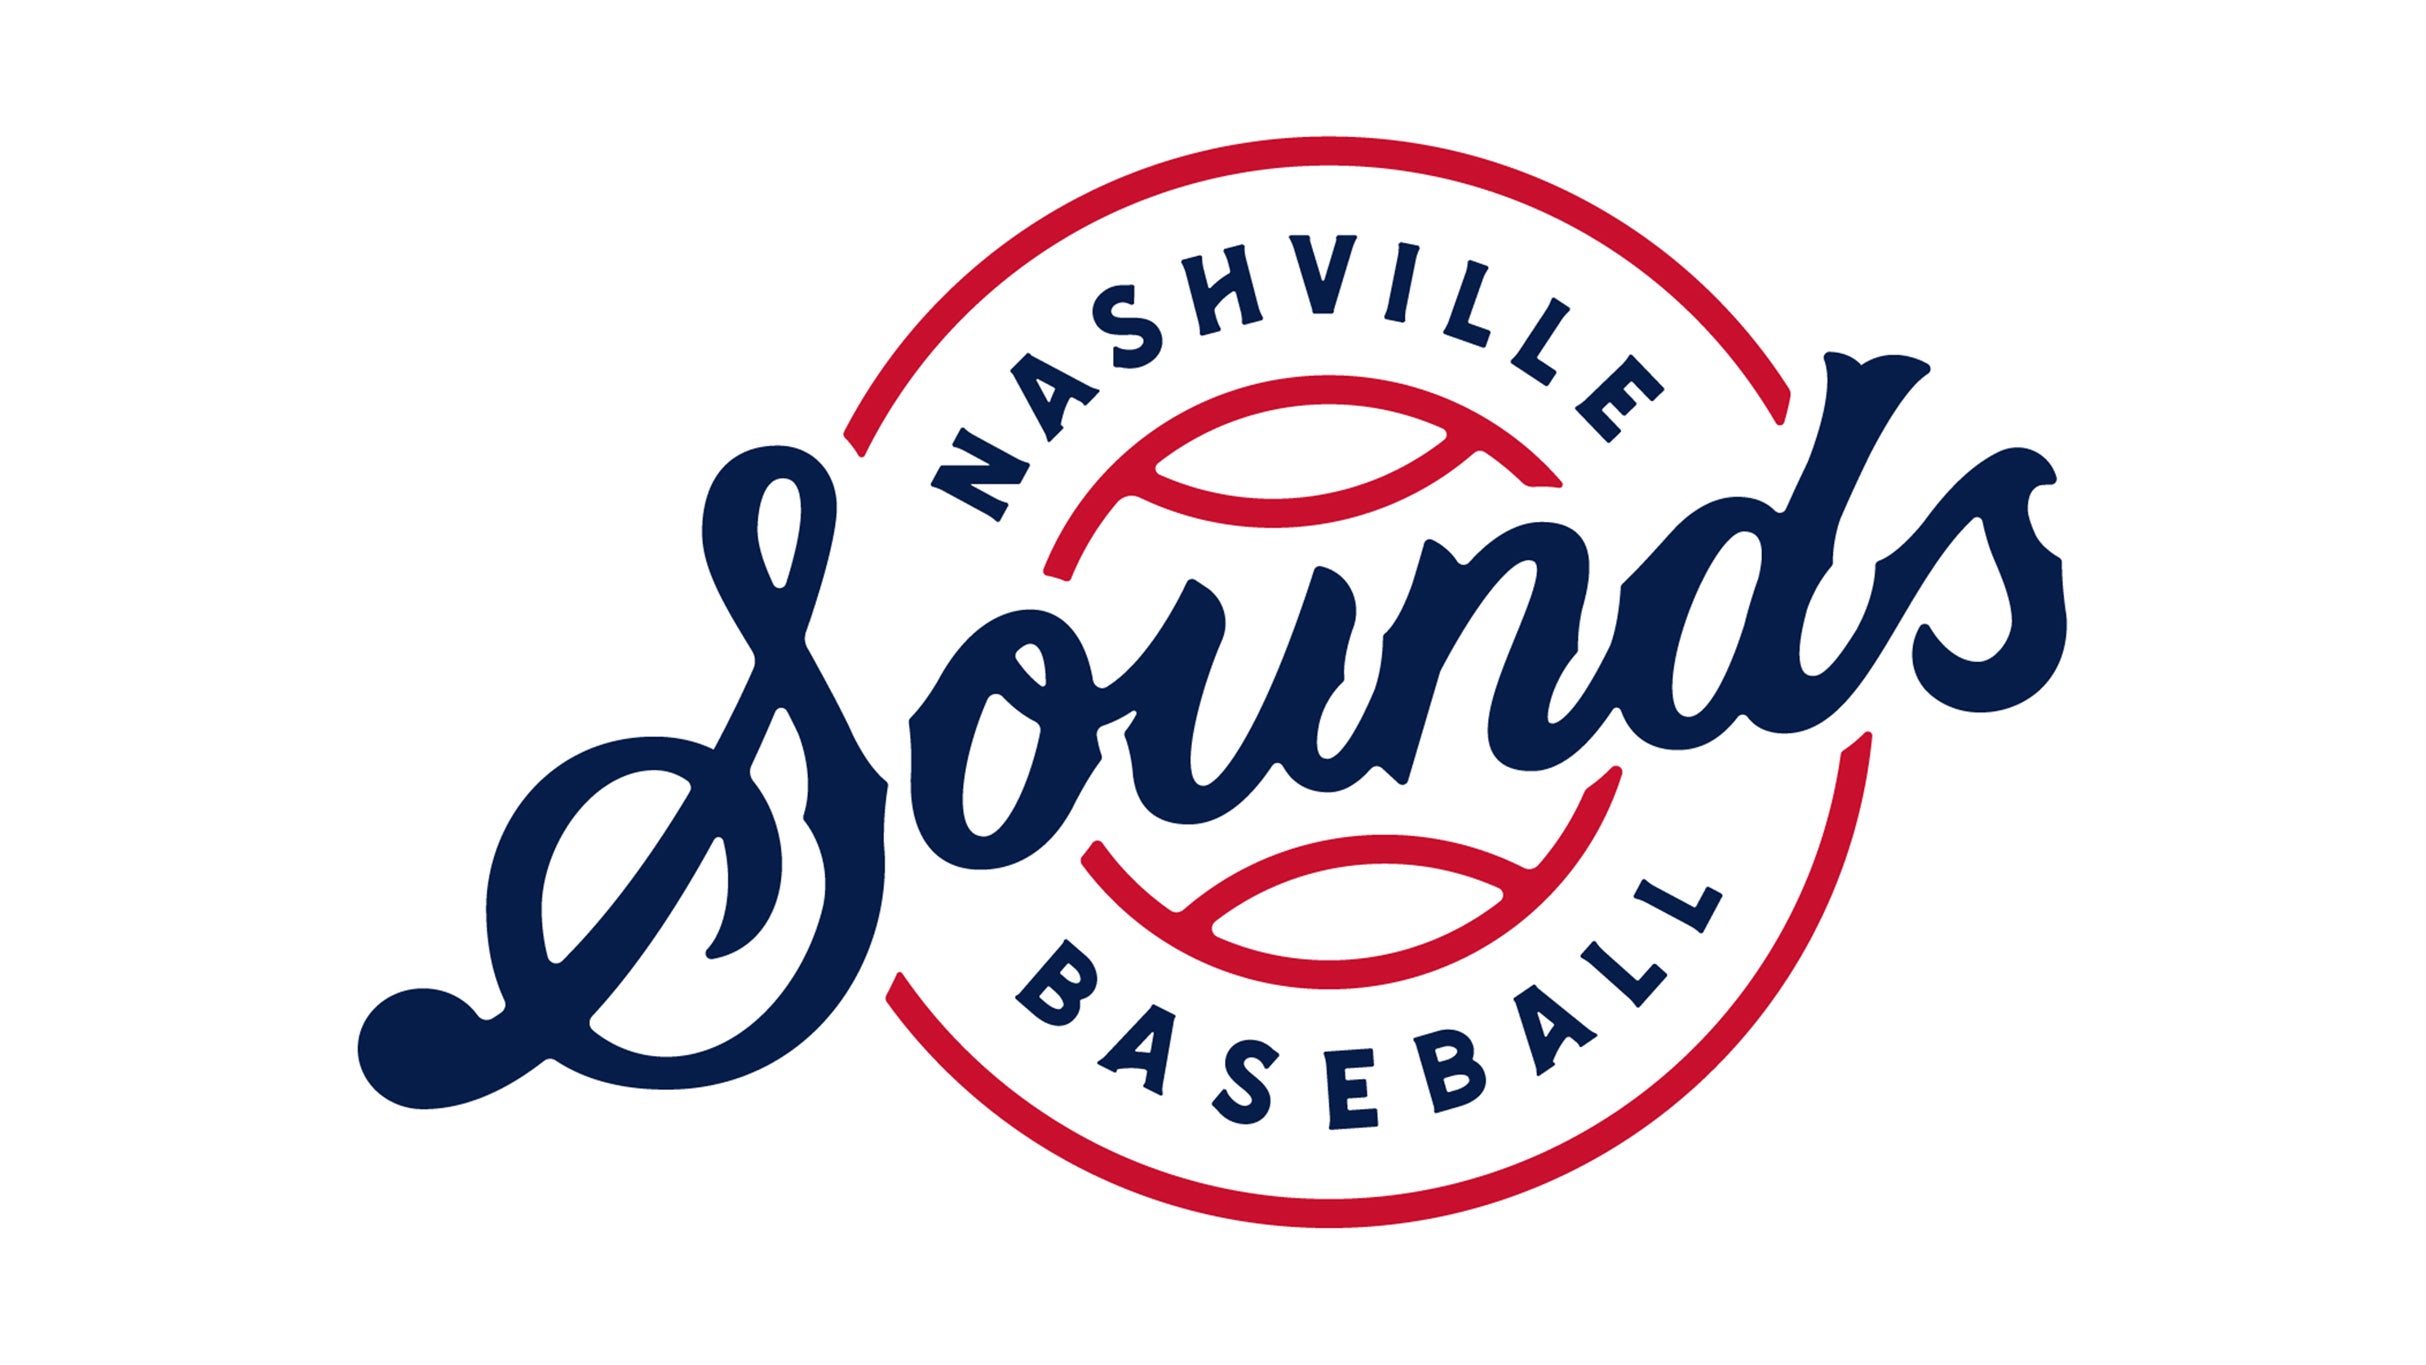 MLB Home Run Derby X Nashville presale password for show tickets in Nashville, TN (First Horizon Park)